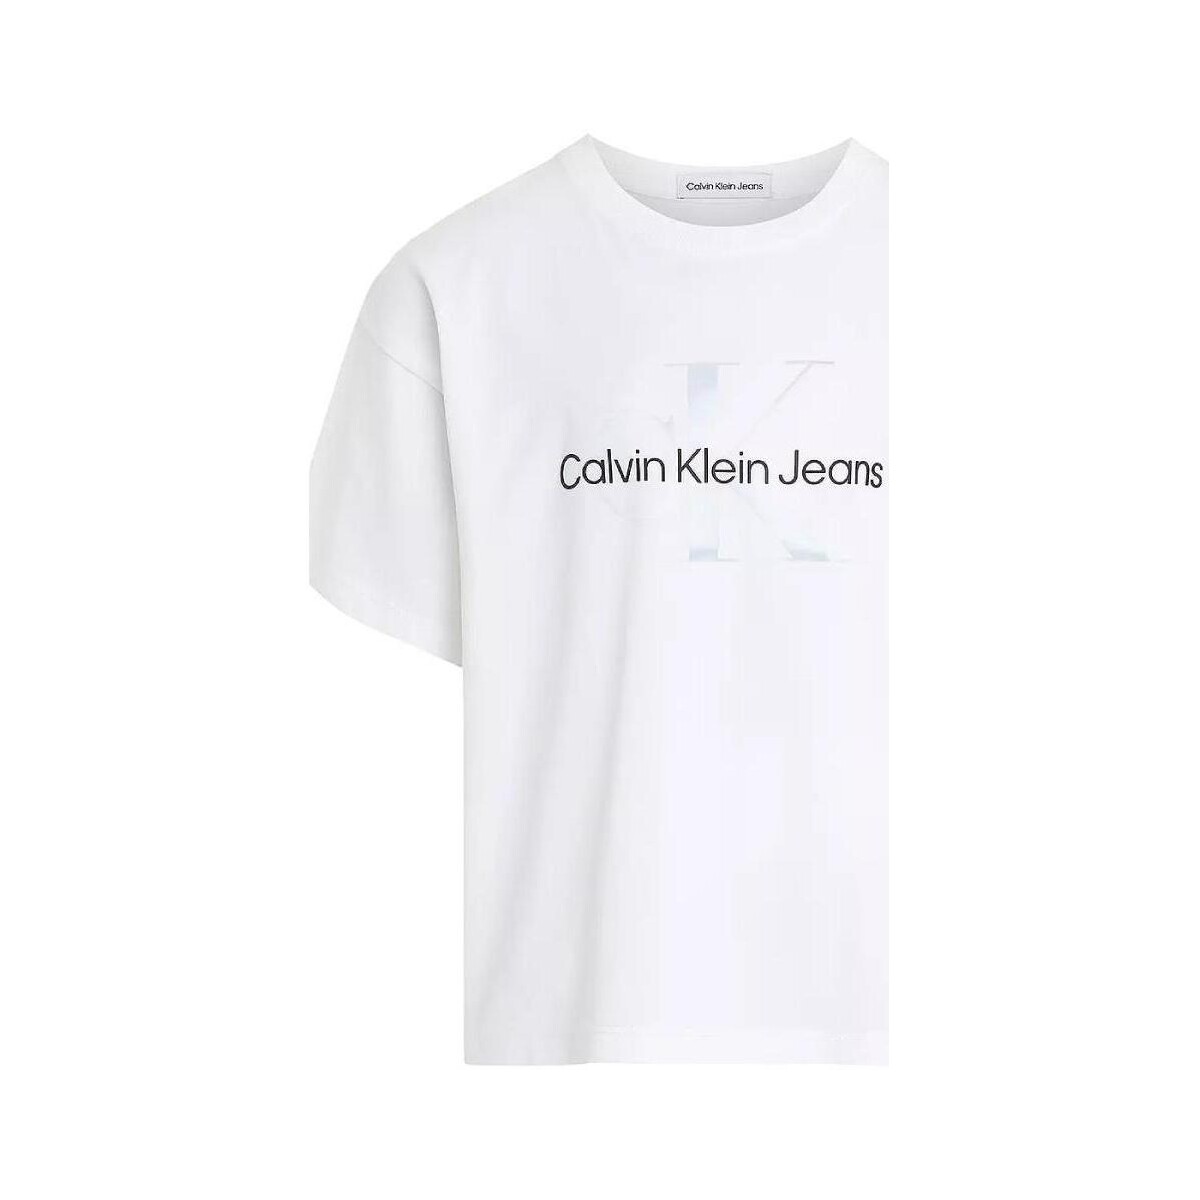 Vêtements Fille T-shirts manches courtes Calvin Klein Jeans  Blanc